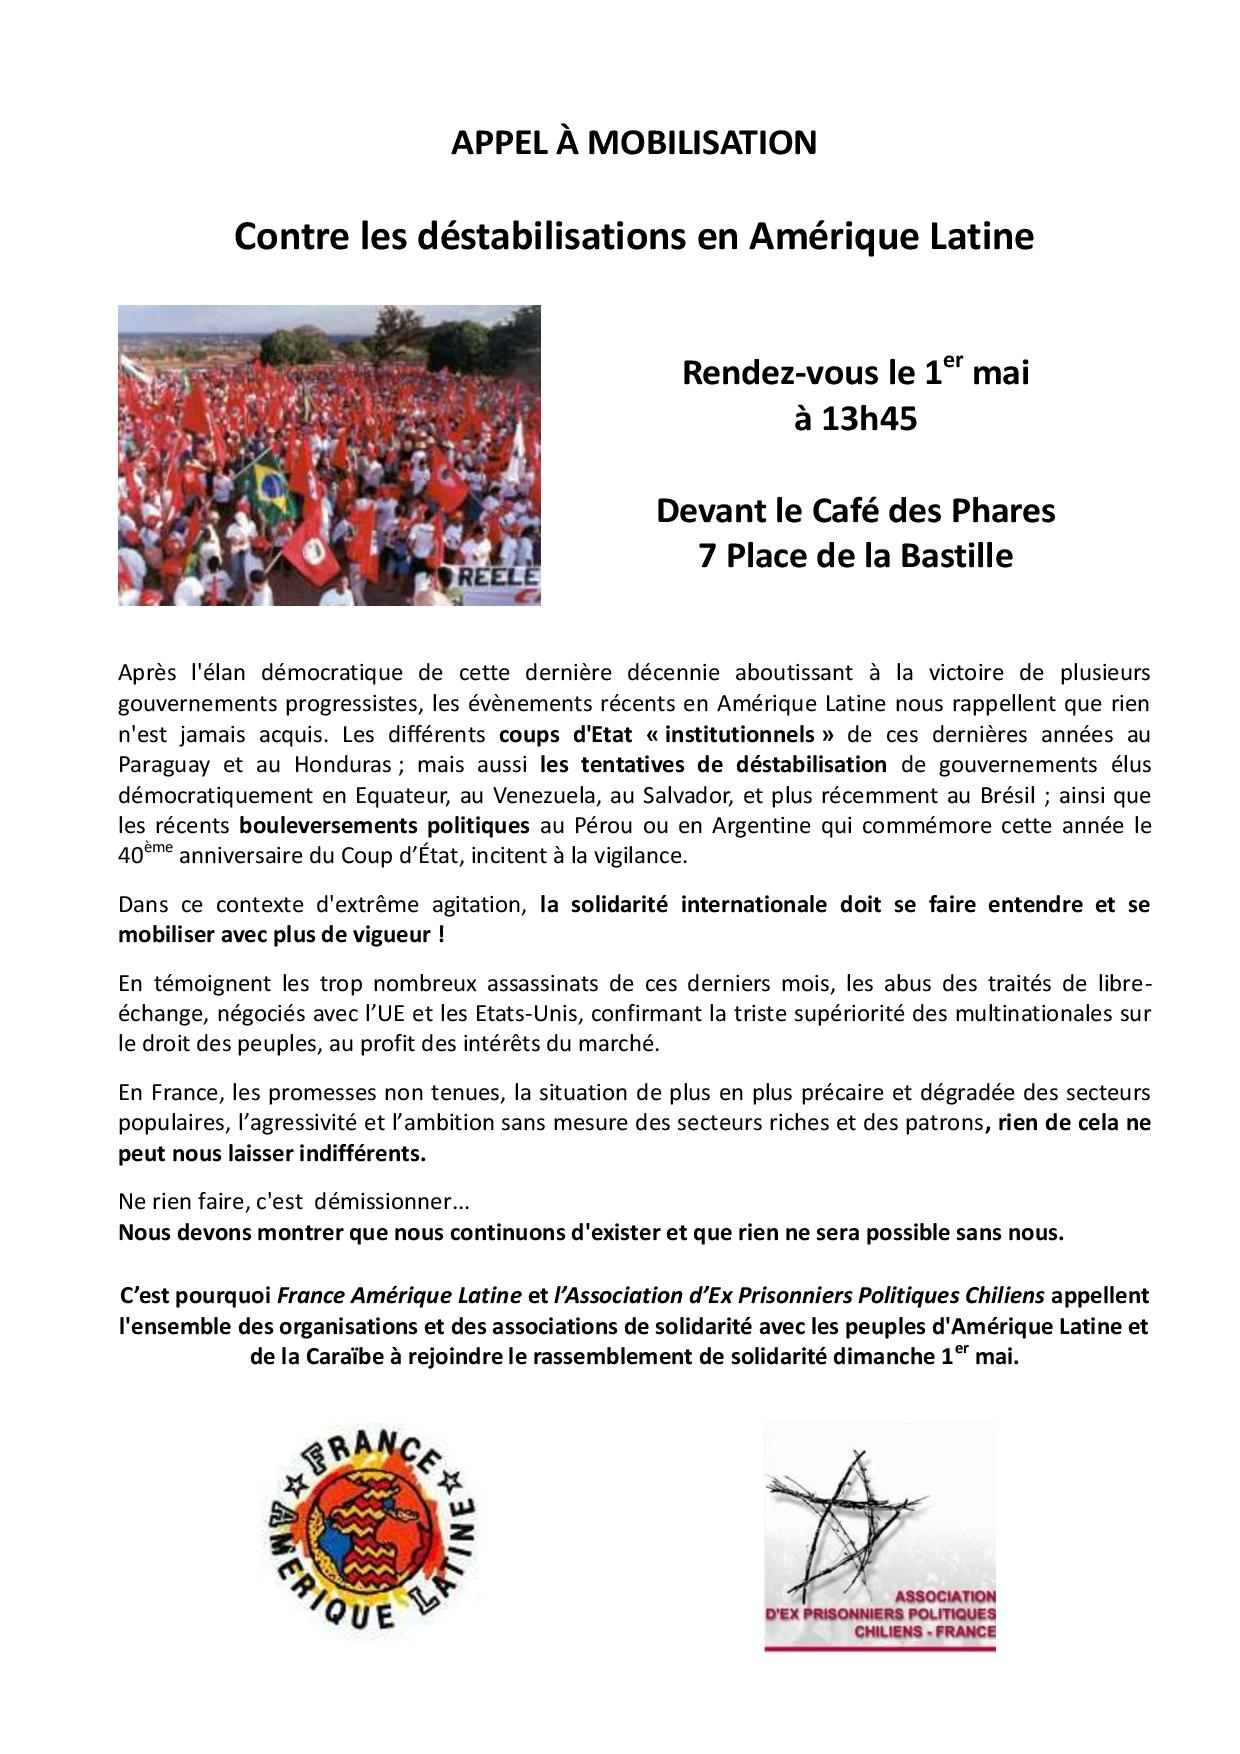 Appel à mobilisation du 1er mai : Contre les déstabilisations en Amérique Latine